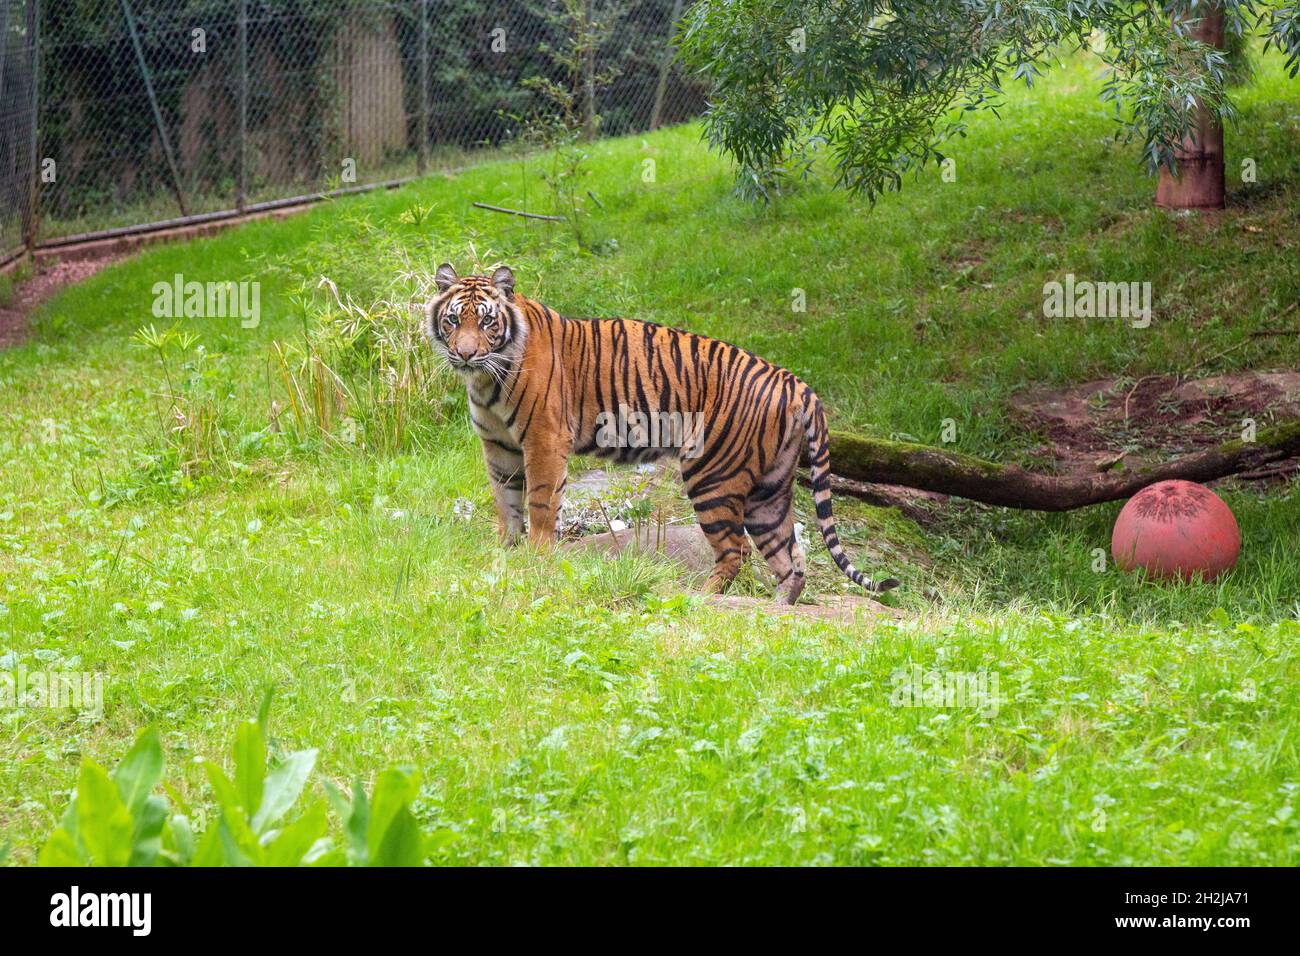 Tigre de Sumatra au zoo de Paignton, Devon, Angleterre, Royaume-Uni. Banque D'Images